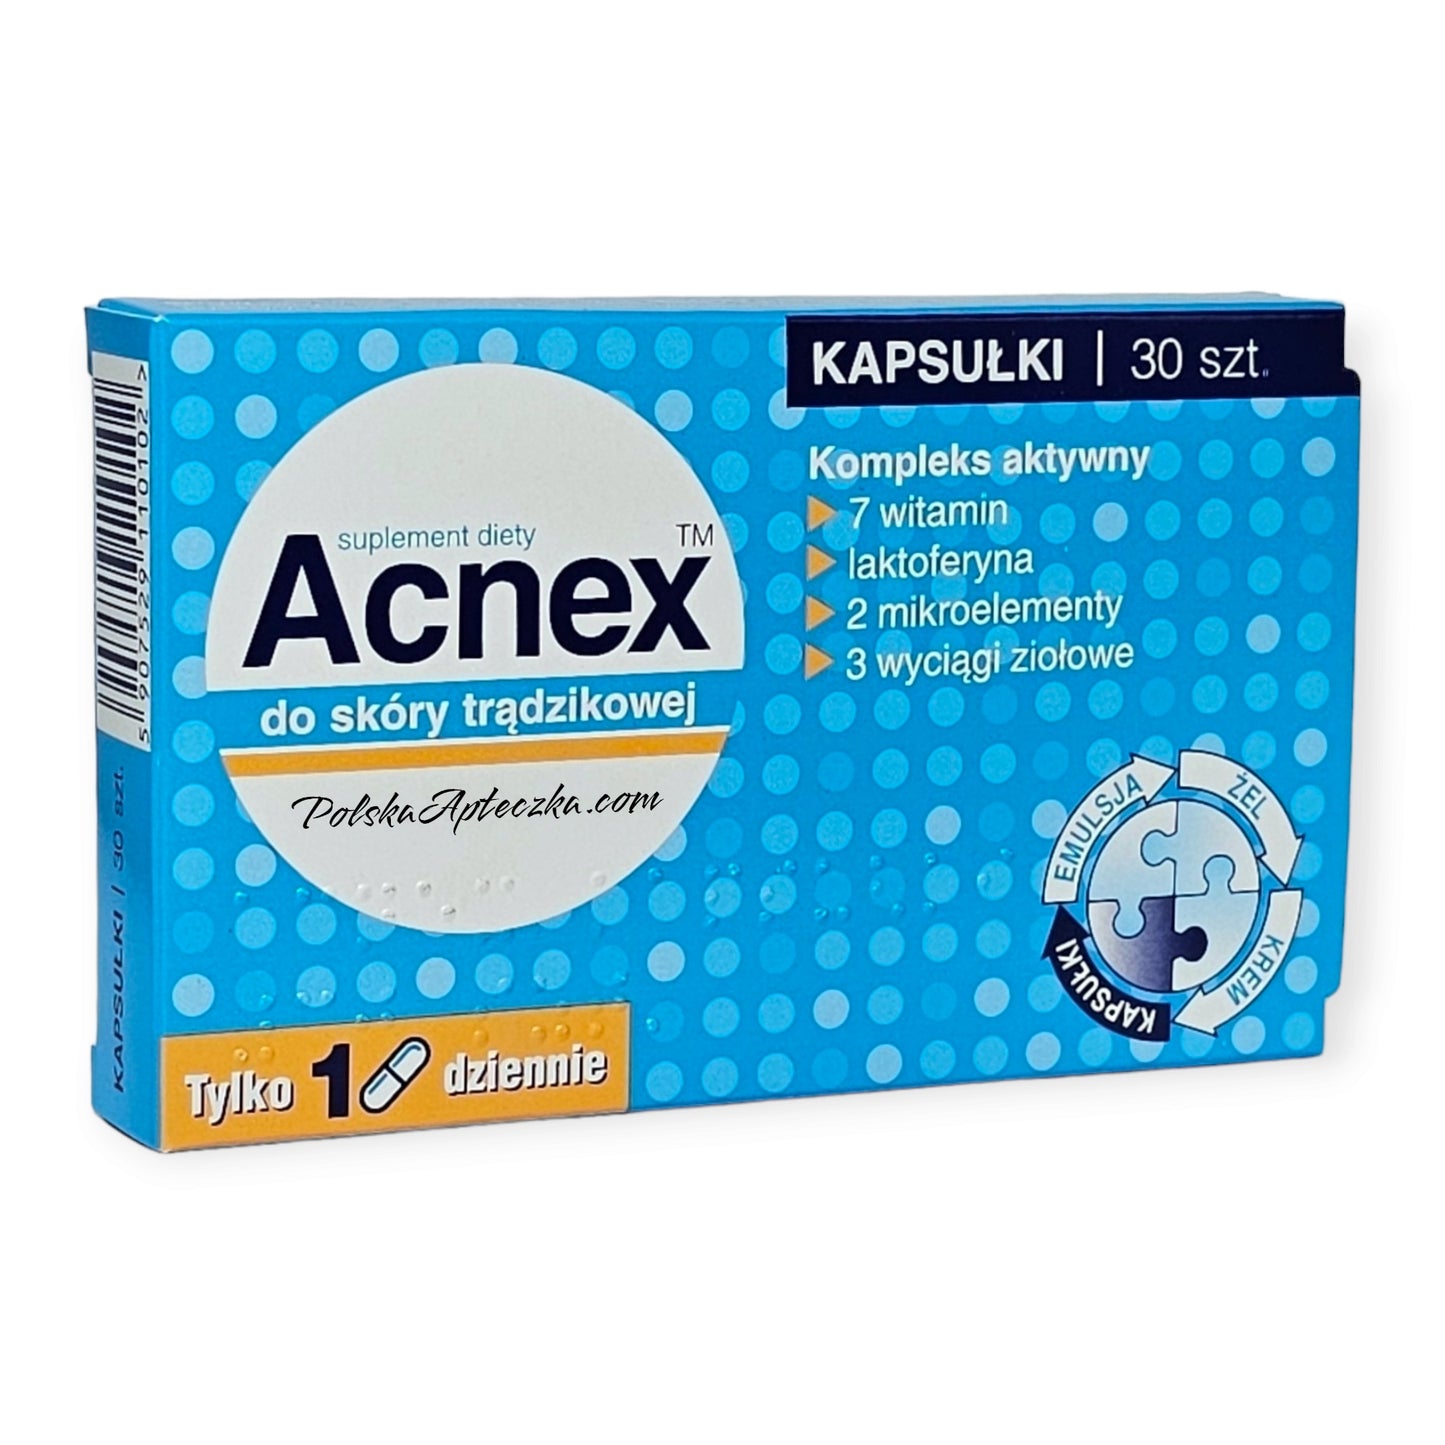 Acnex capsules